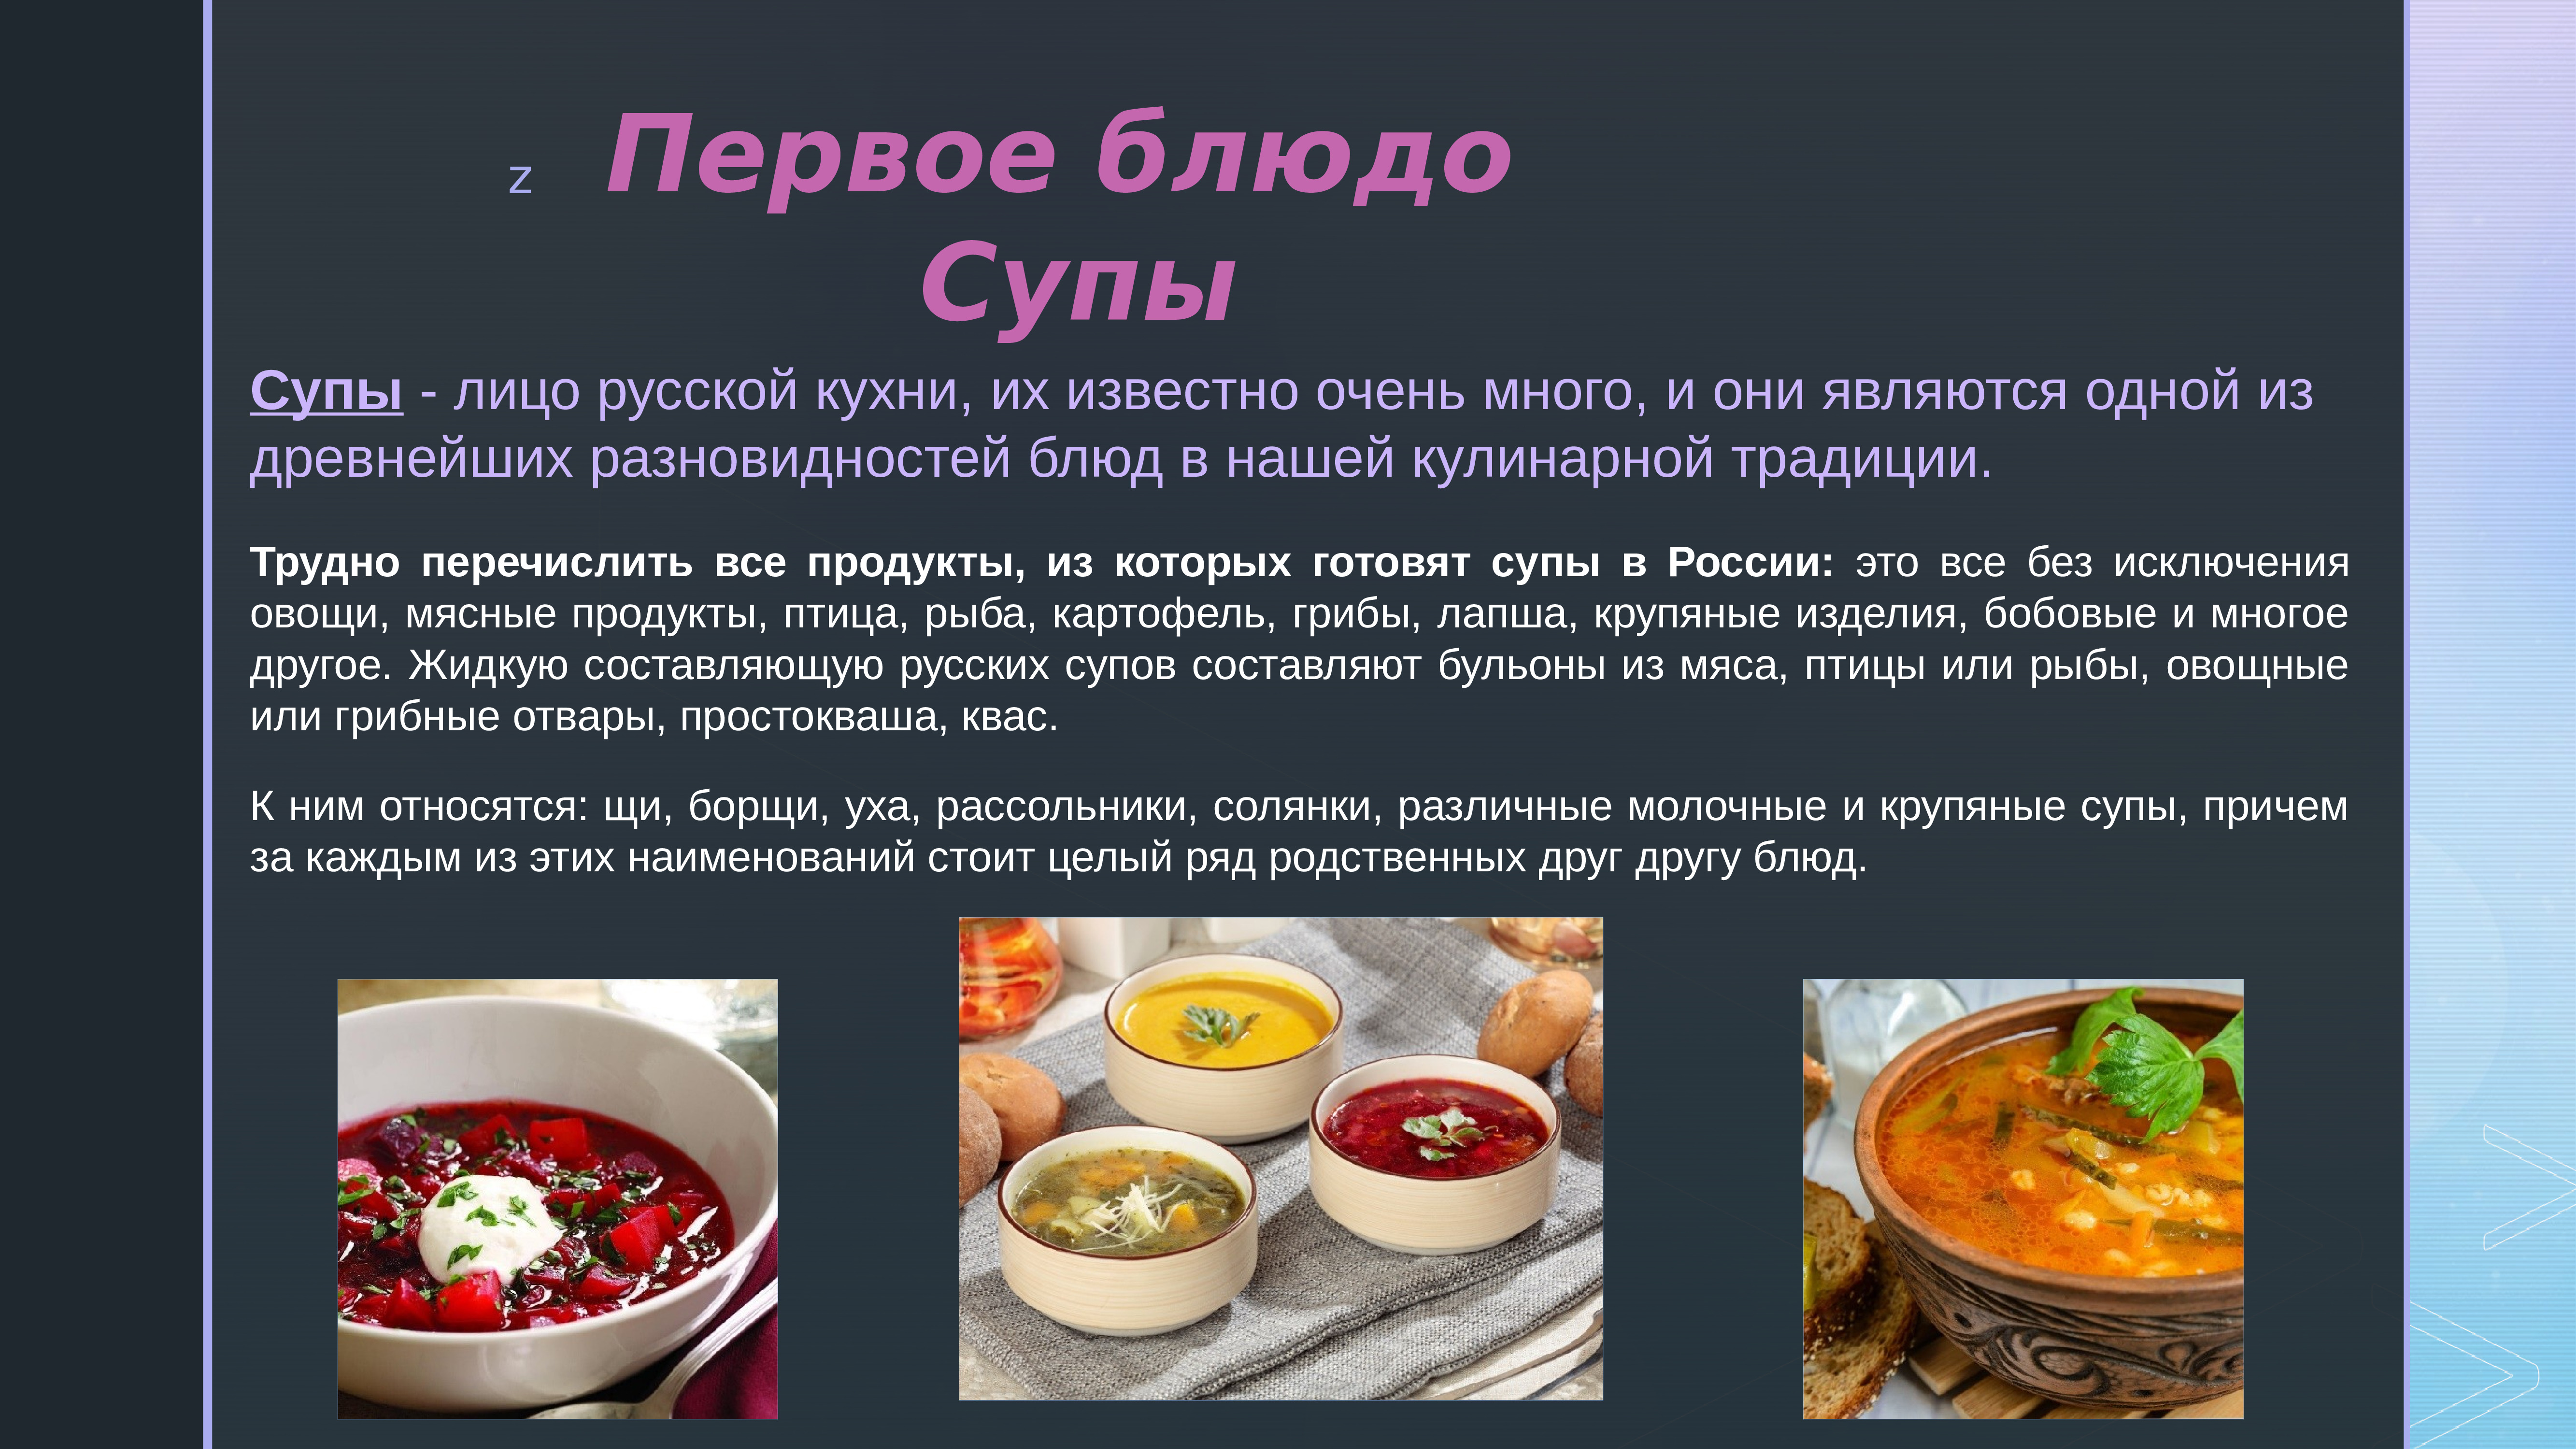 Традиционные блюда Еврейской кухни презентация